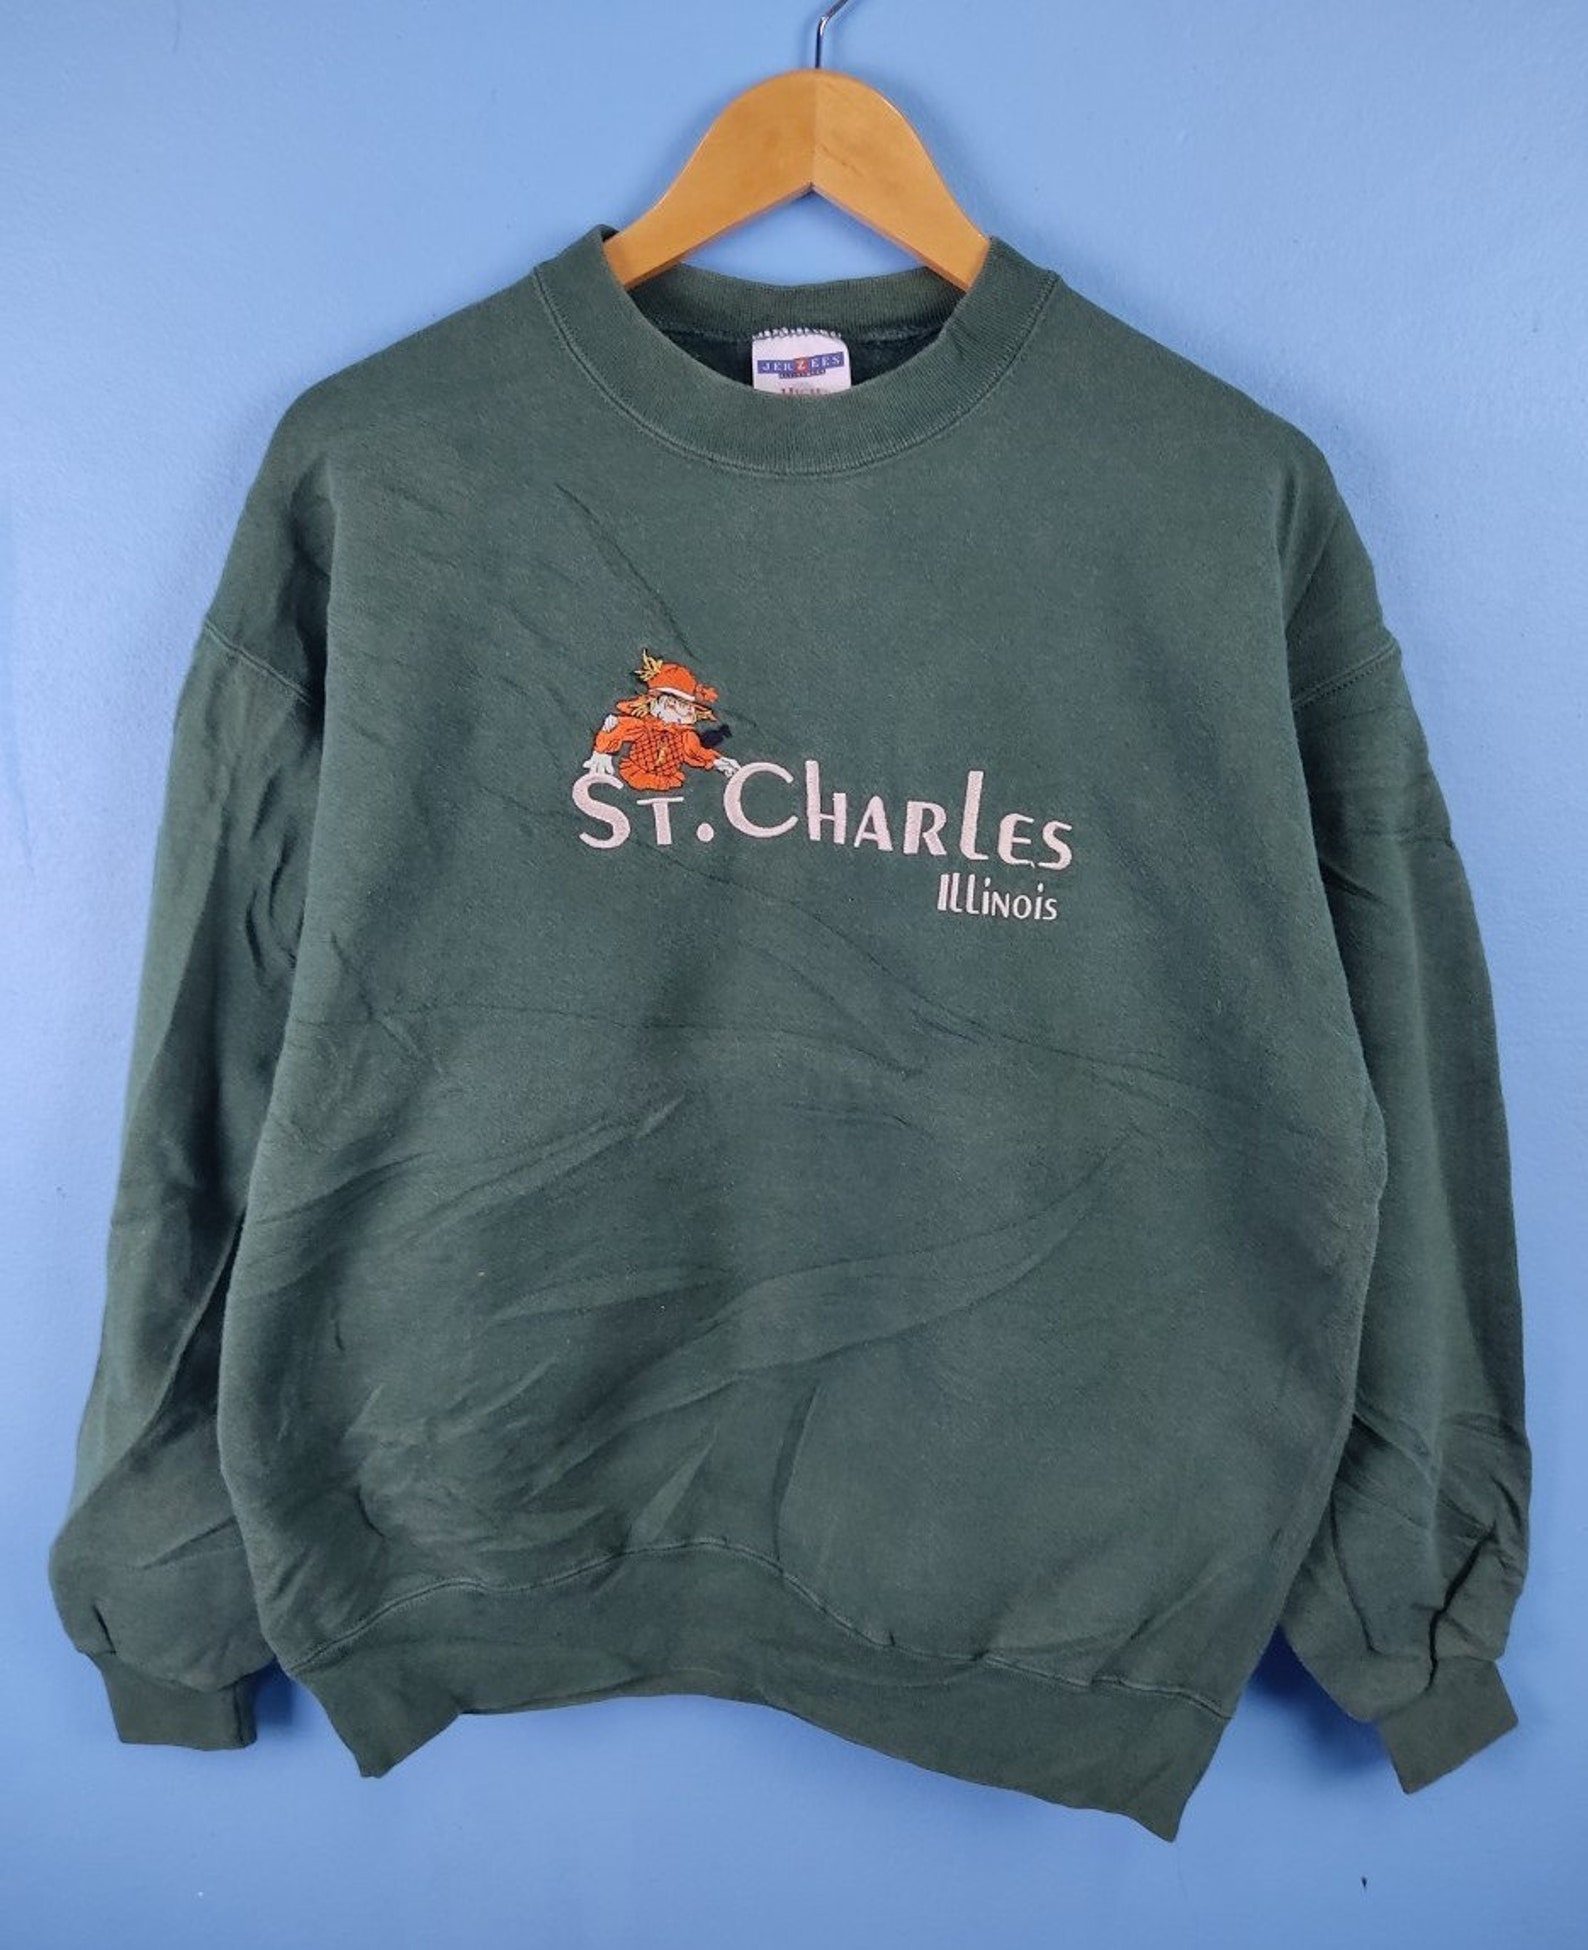 Vintage St.Charles Illinois Sweatshirt embroidered | Etsy